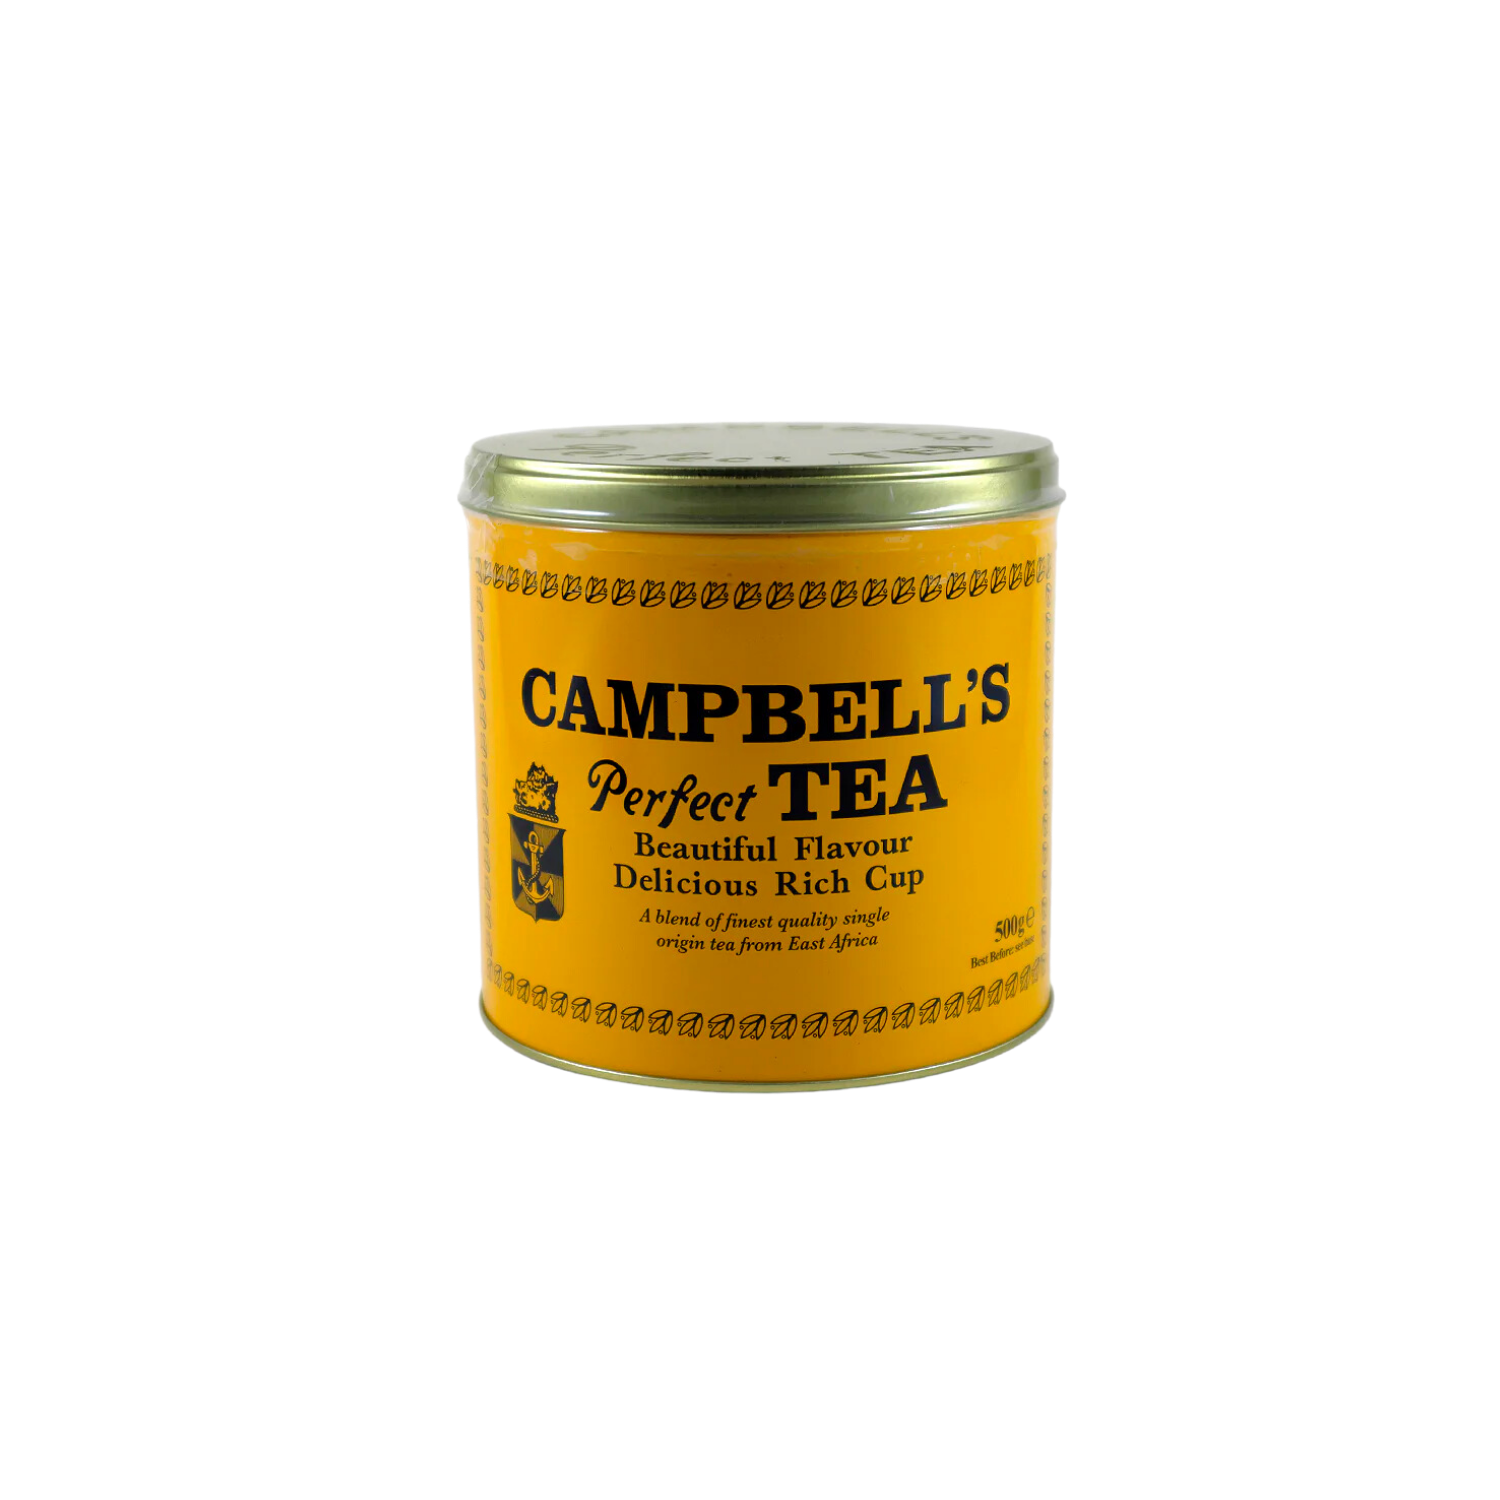 Campbells Perfect Tea